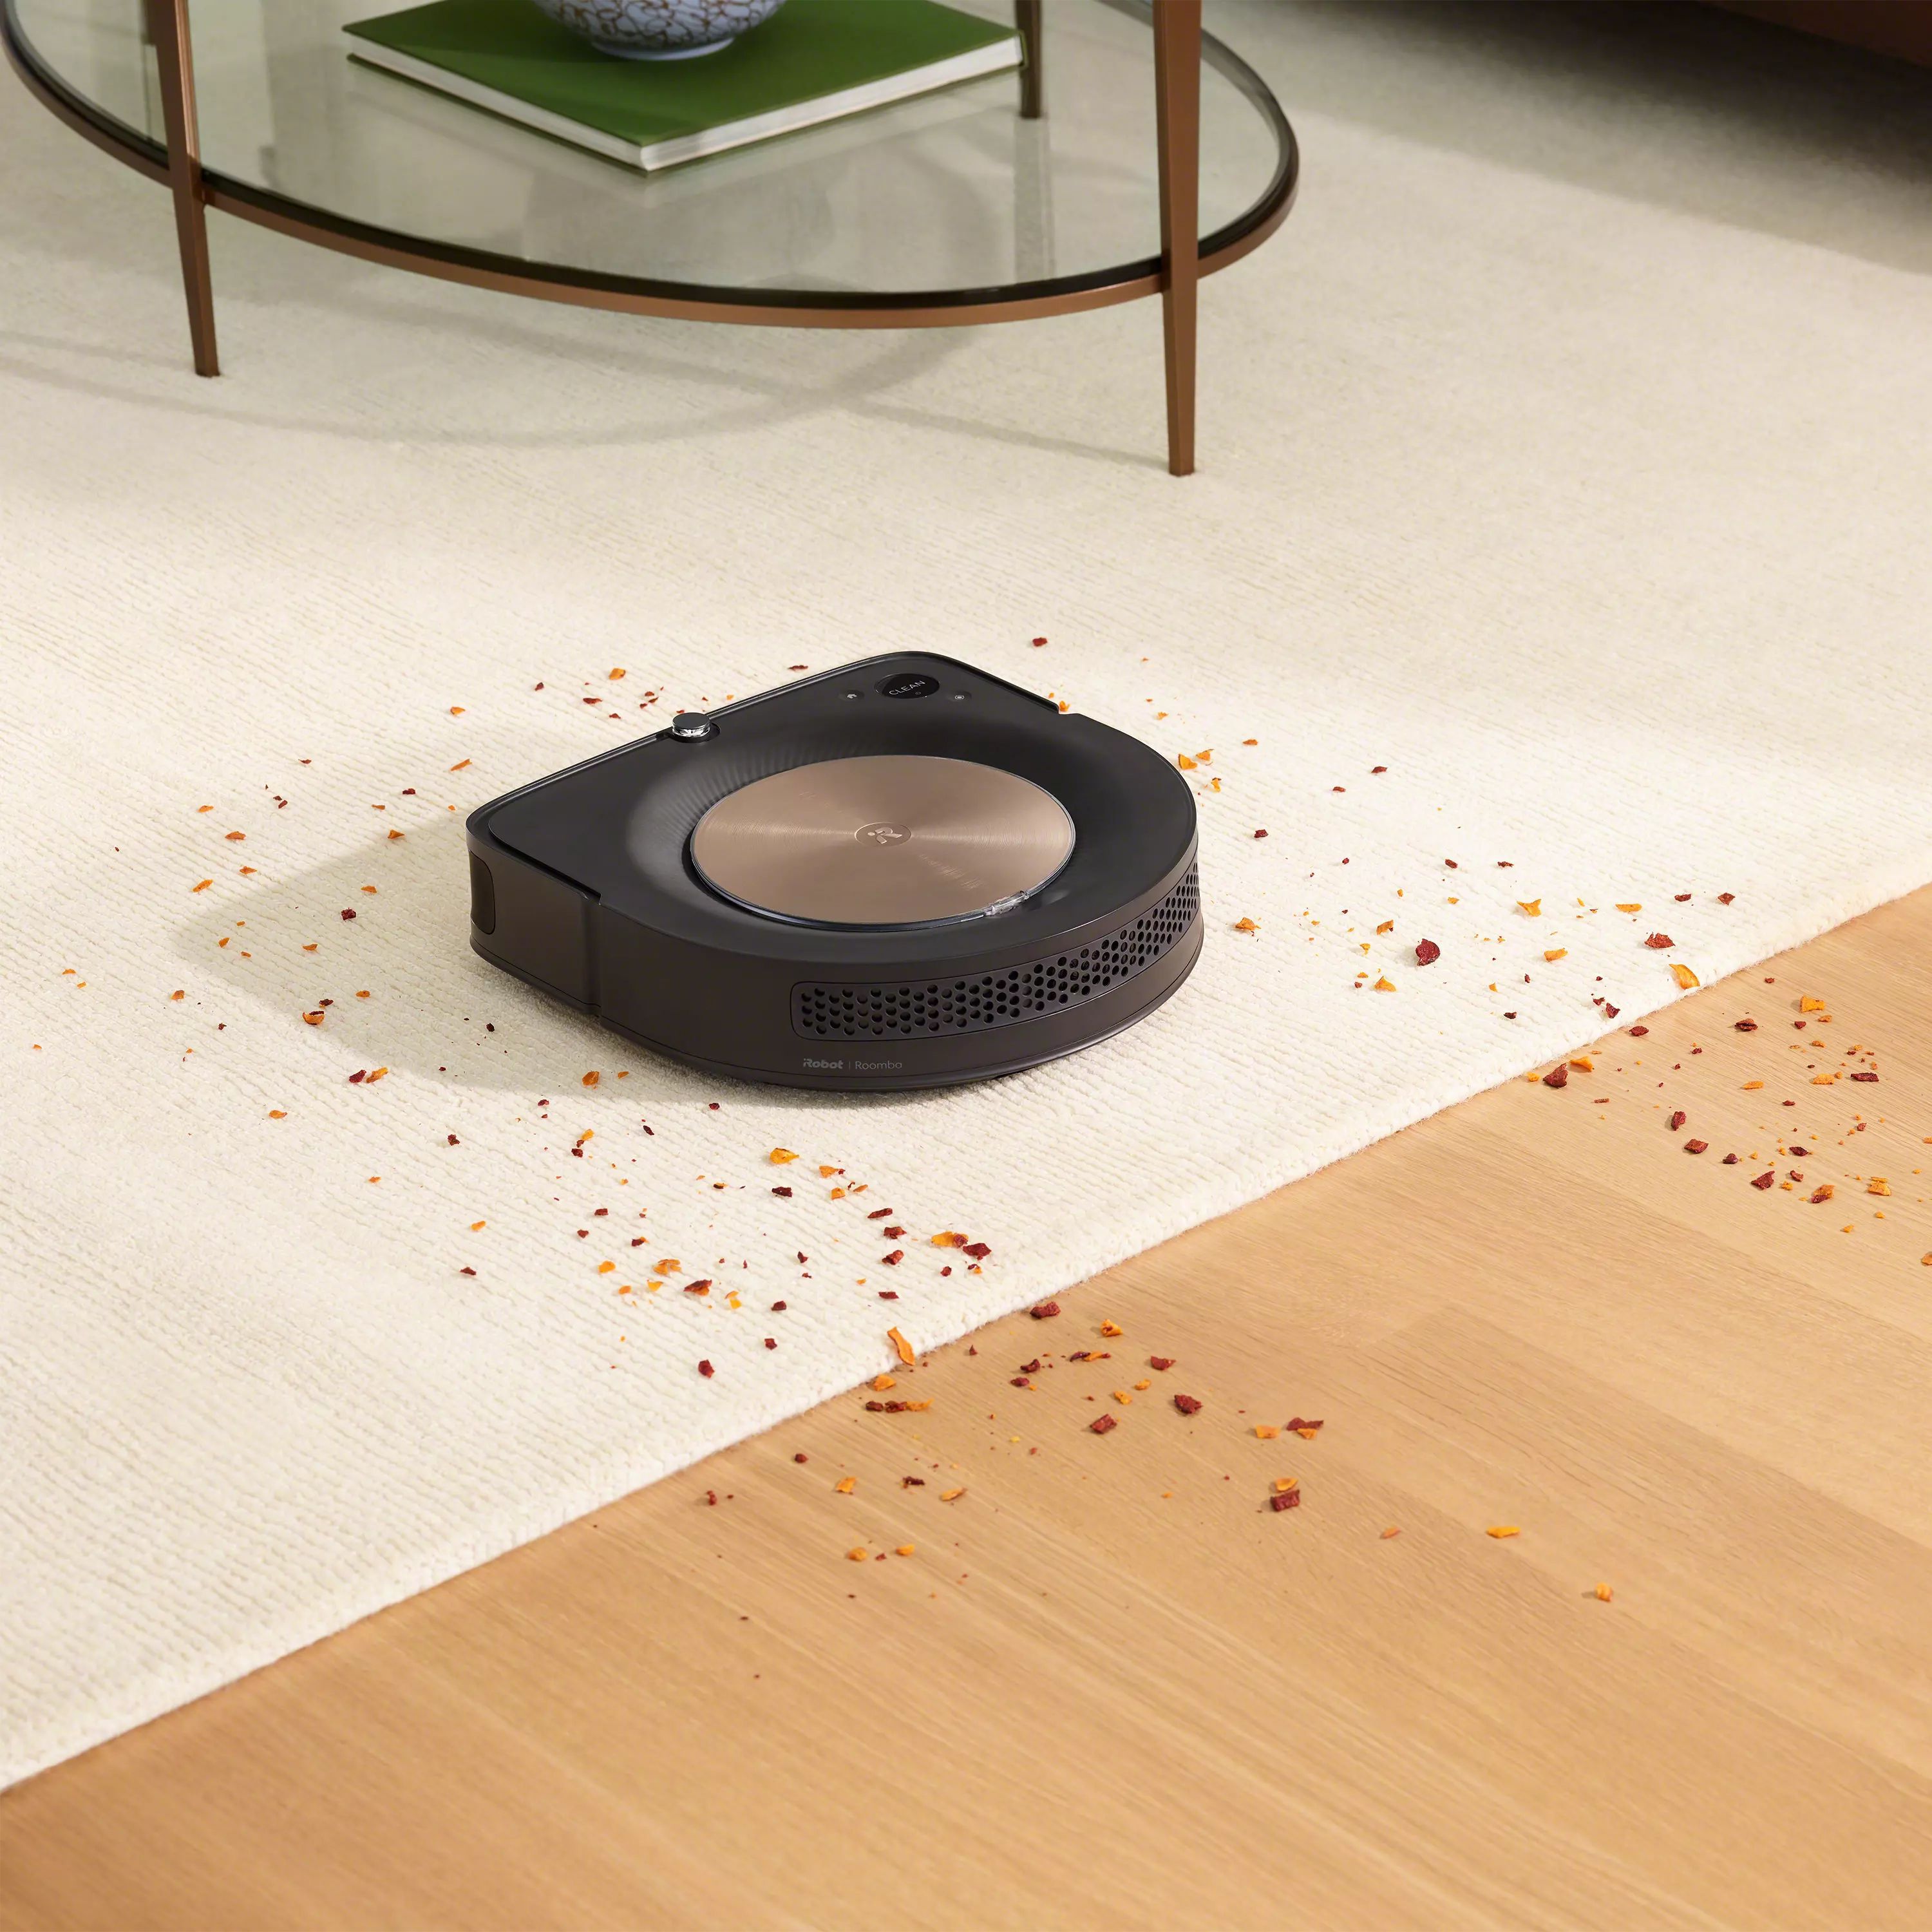 Roomba® S9+ Self-Emptying Robot Vacuum & Braava jet® M6 Robot Mop 